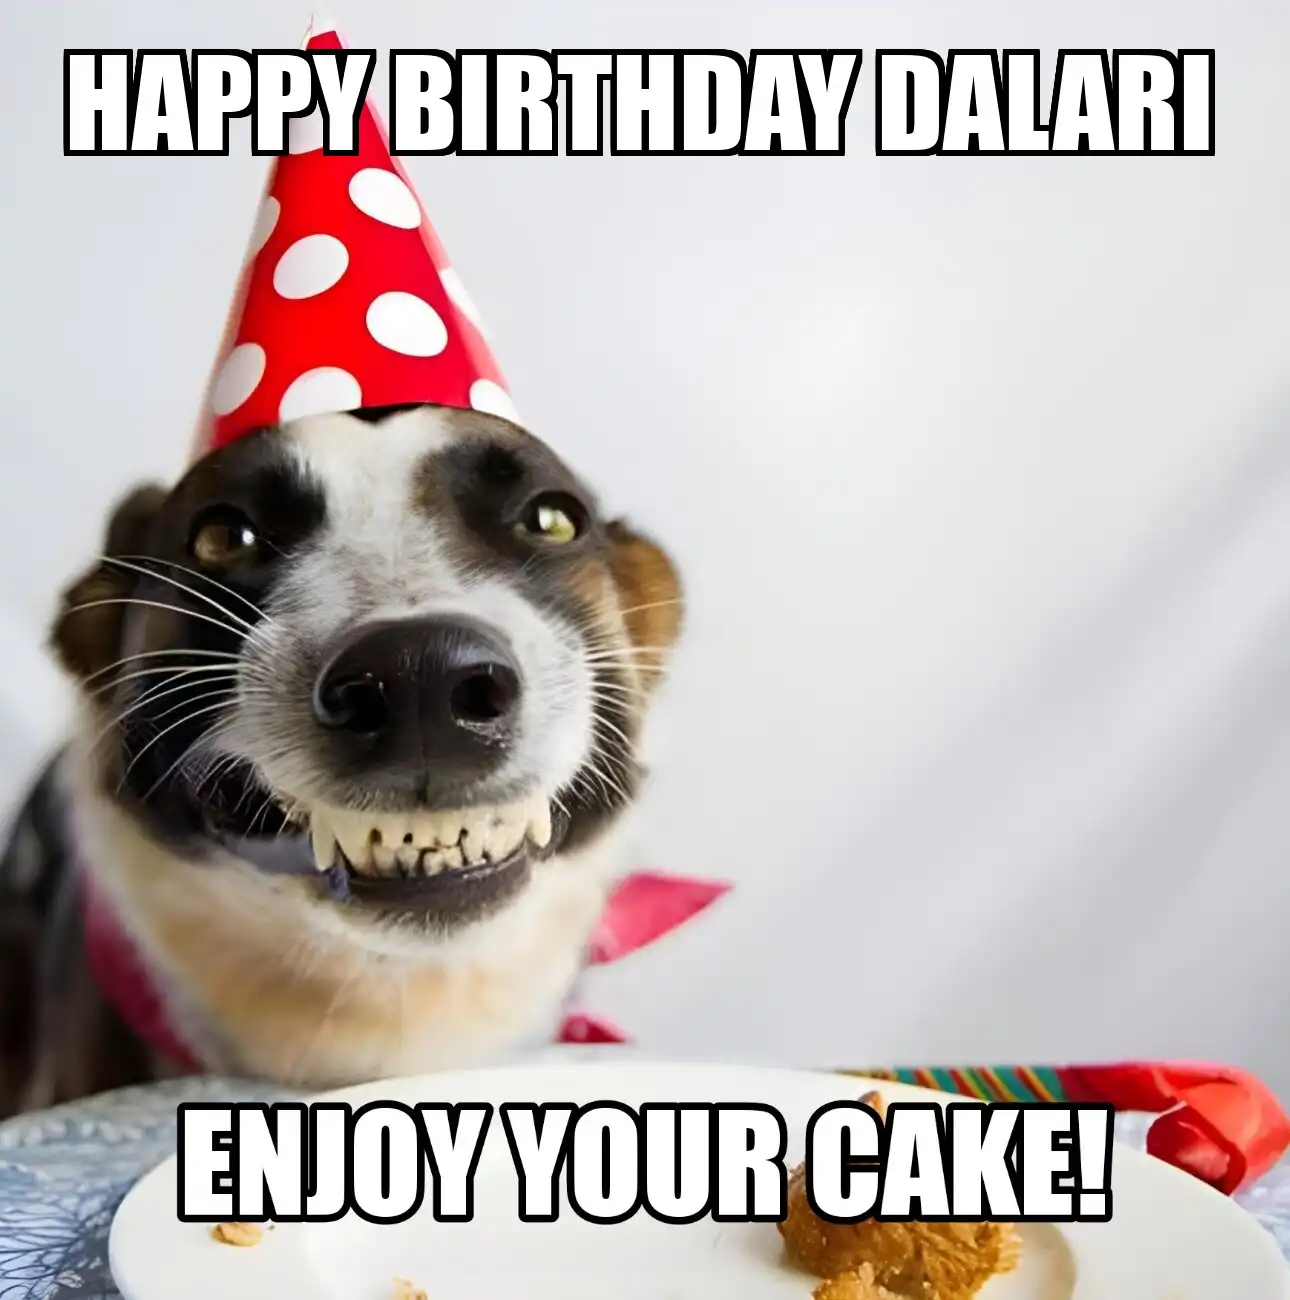 Happy Birthday Dalari Enjoy Your Cake Dog Meme